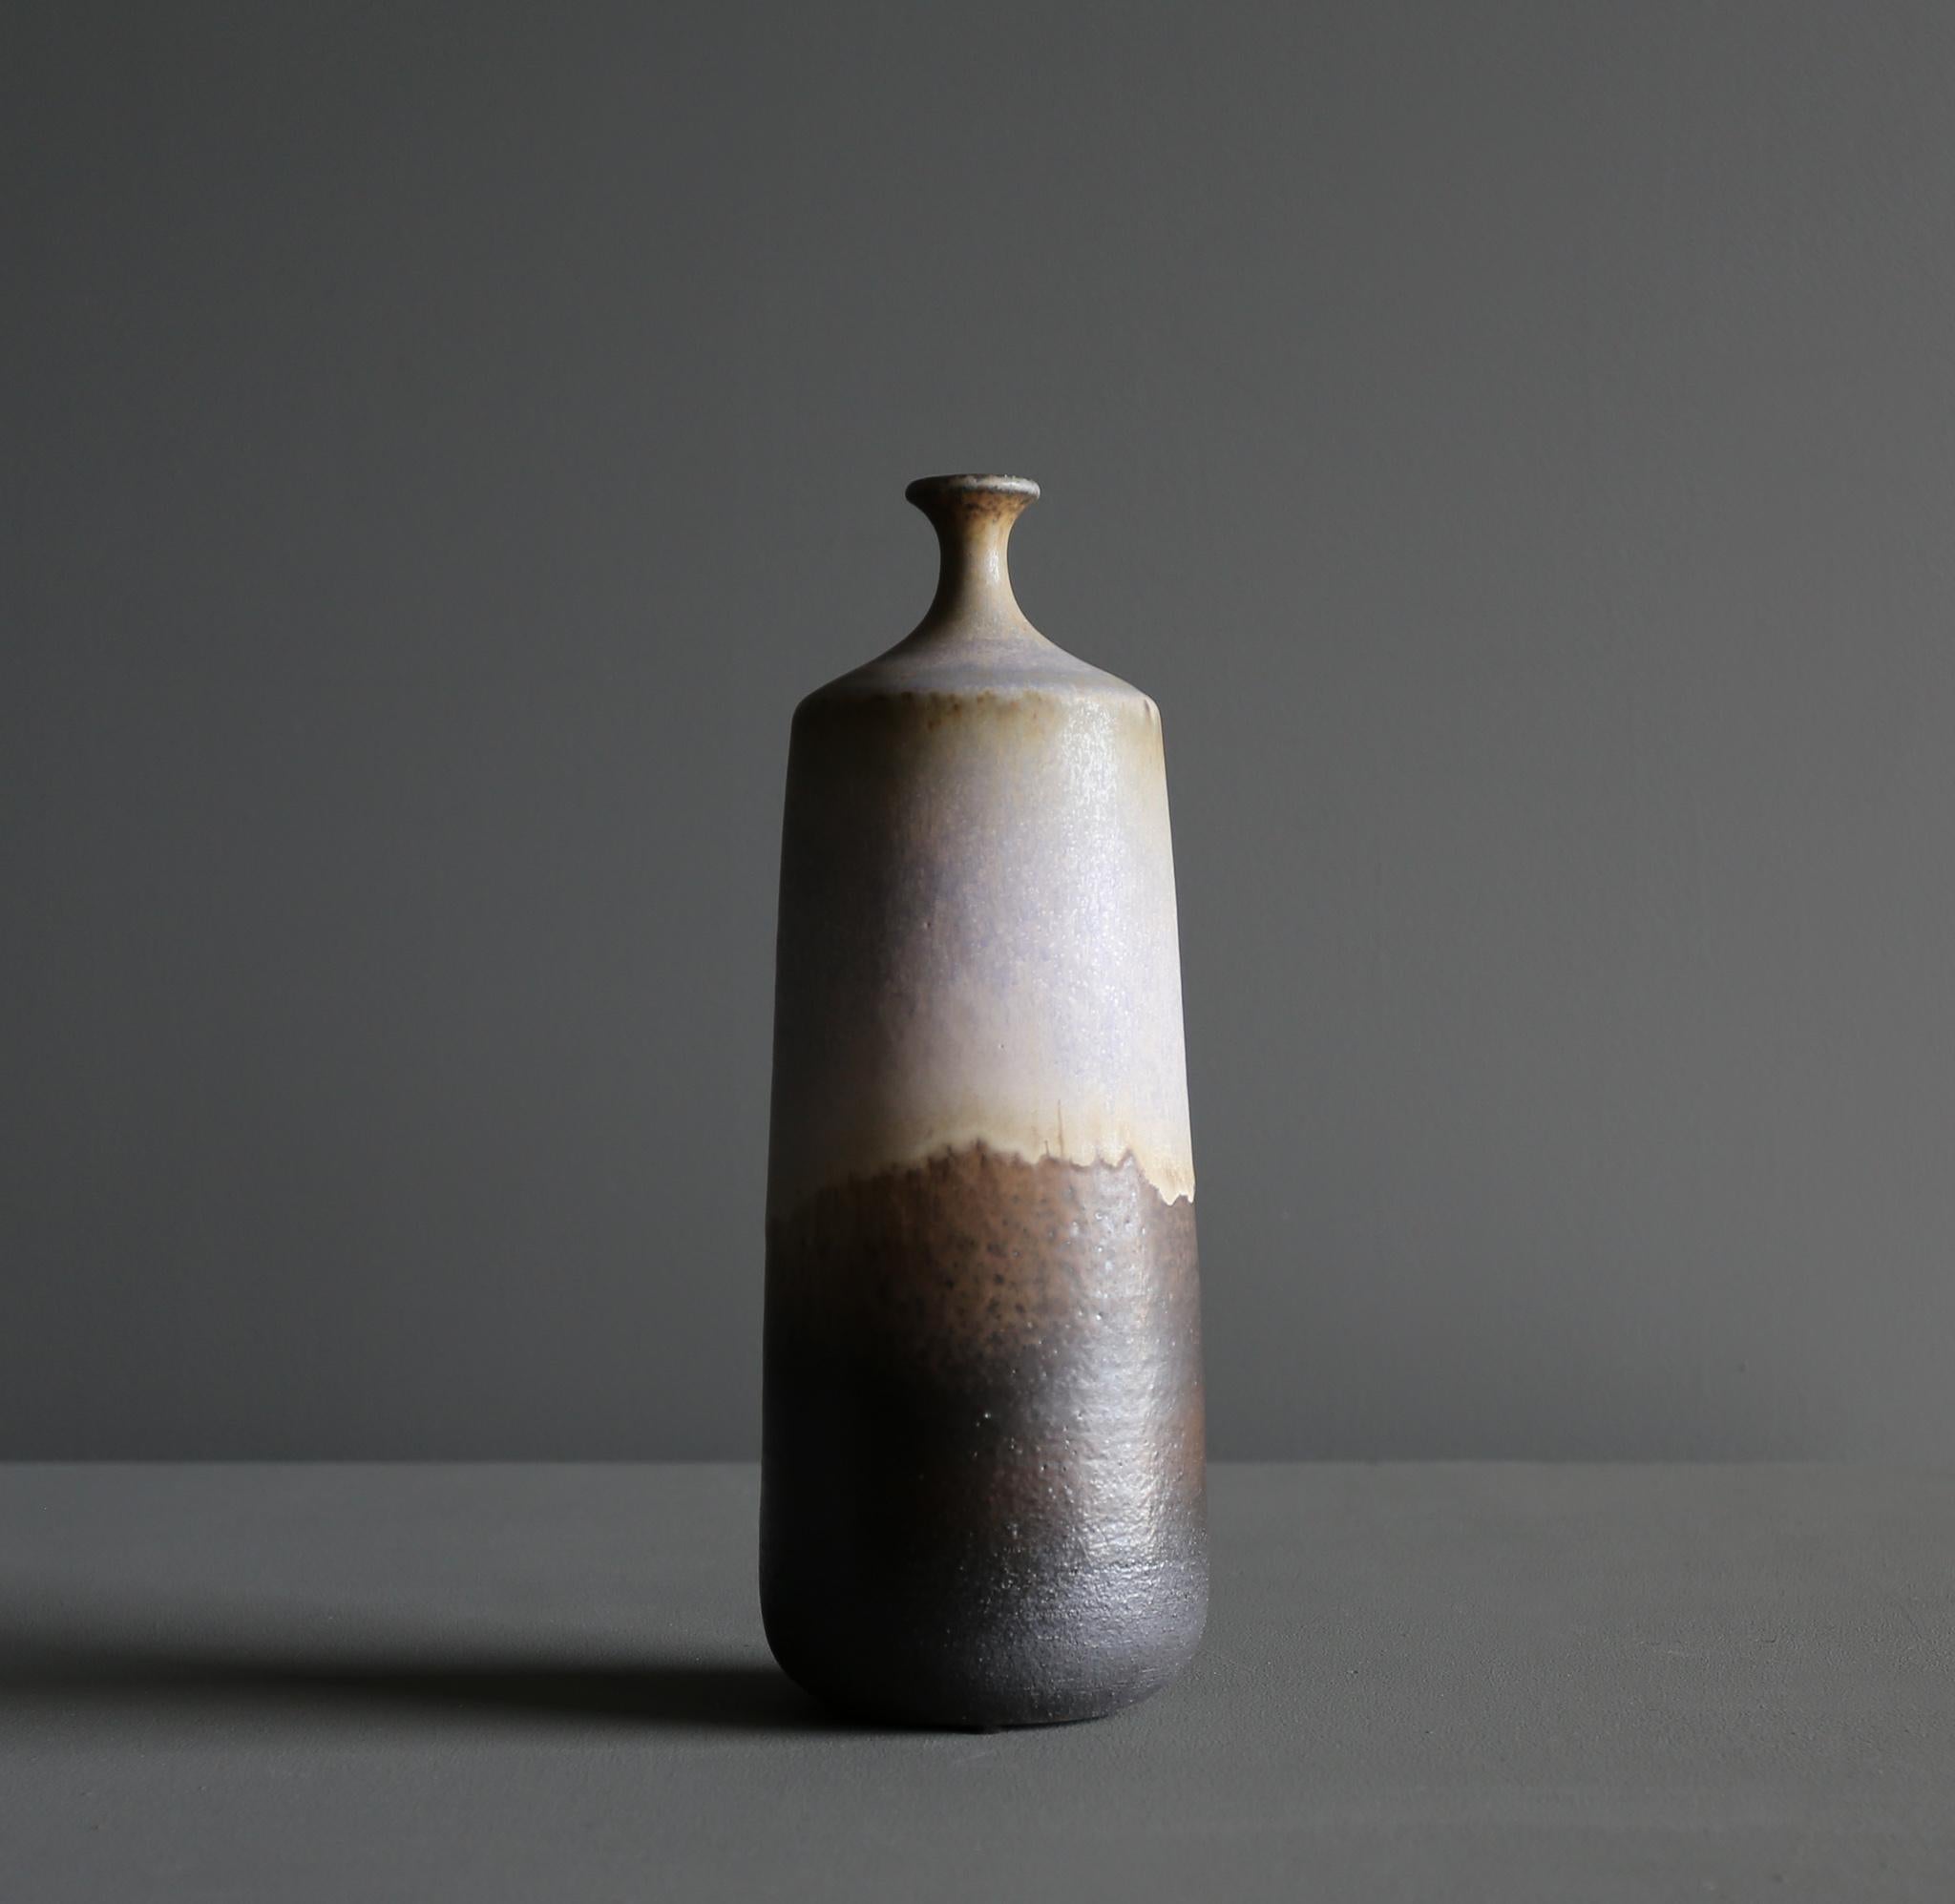 Tim Keenan Ceramic vase, 2022.